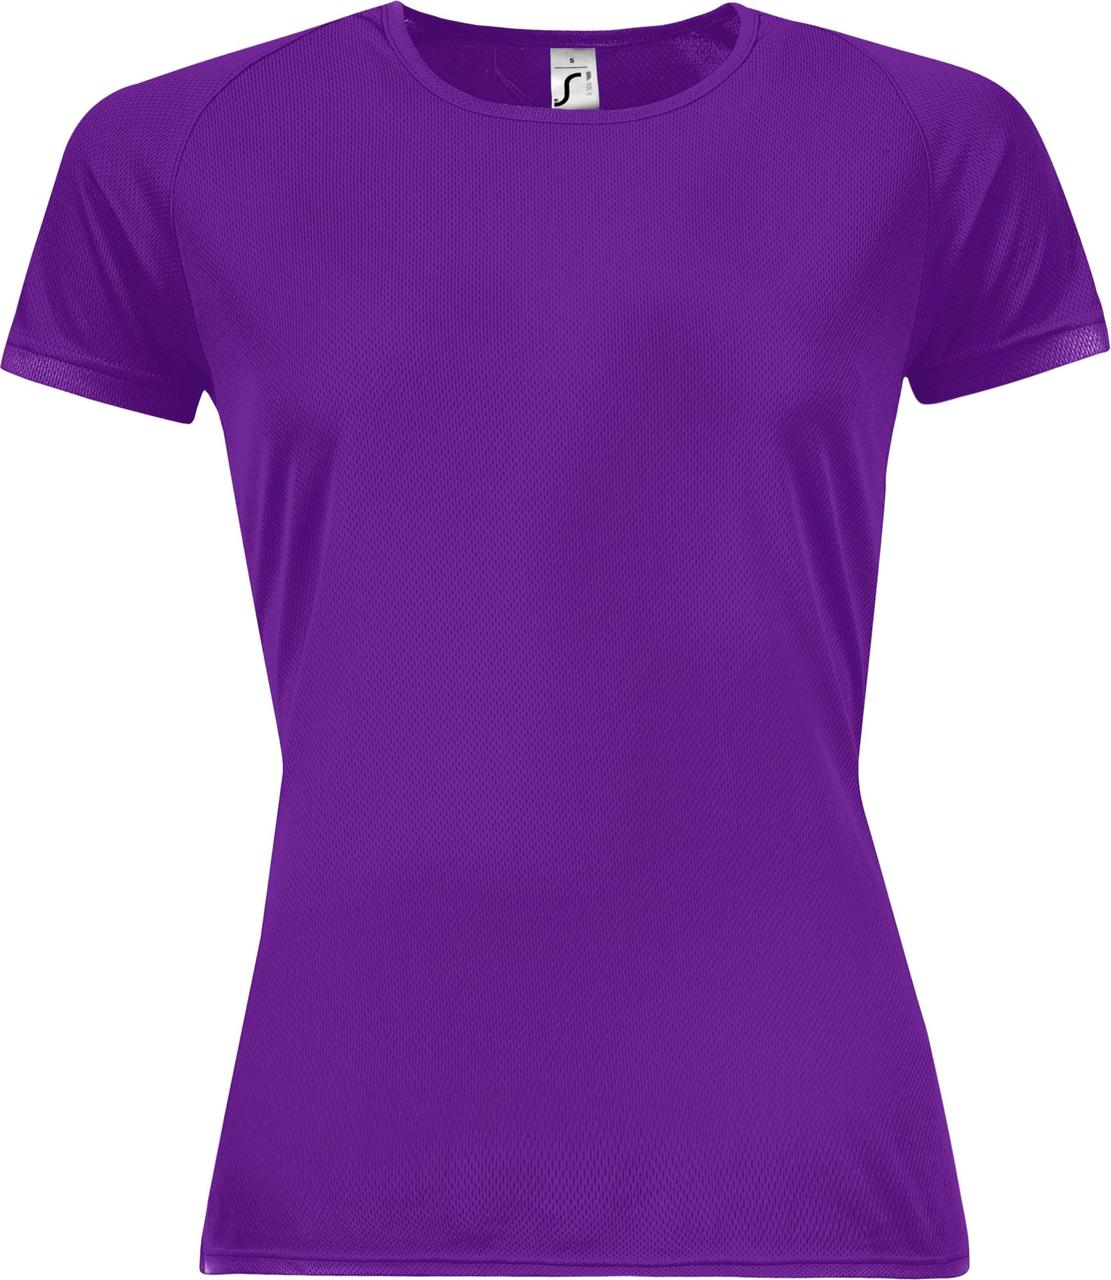 Купить женские футболки оптом. Футболка женская. Яркие футболки. Сиреневая футболка женская. Фиолетовая футболка.